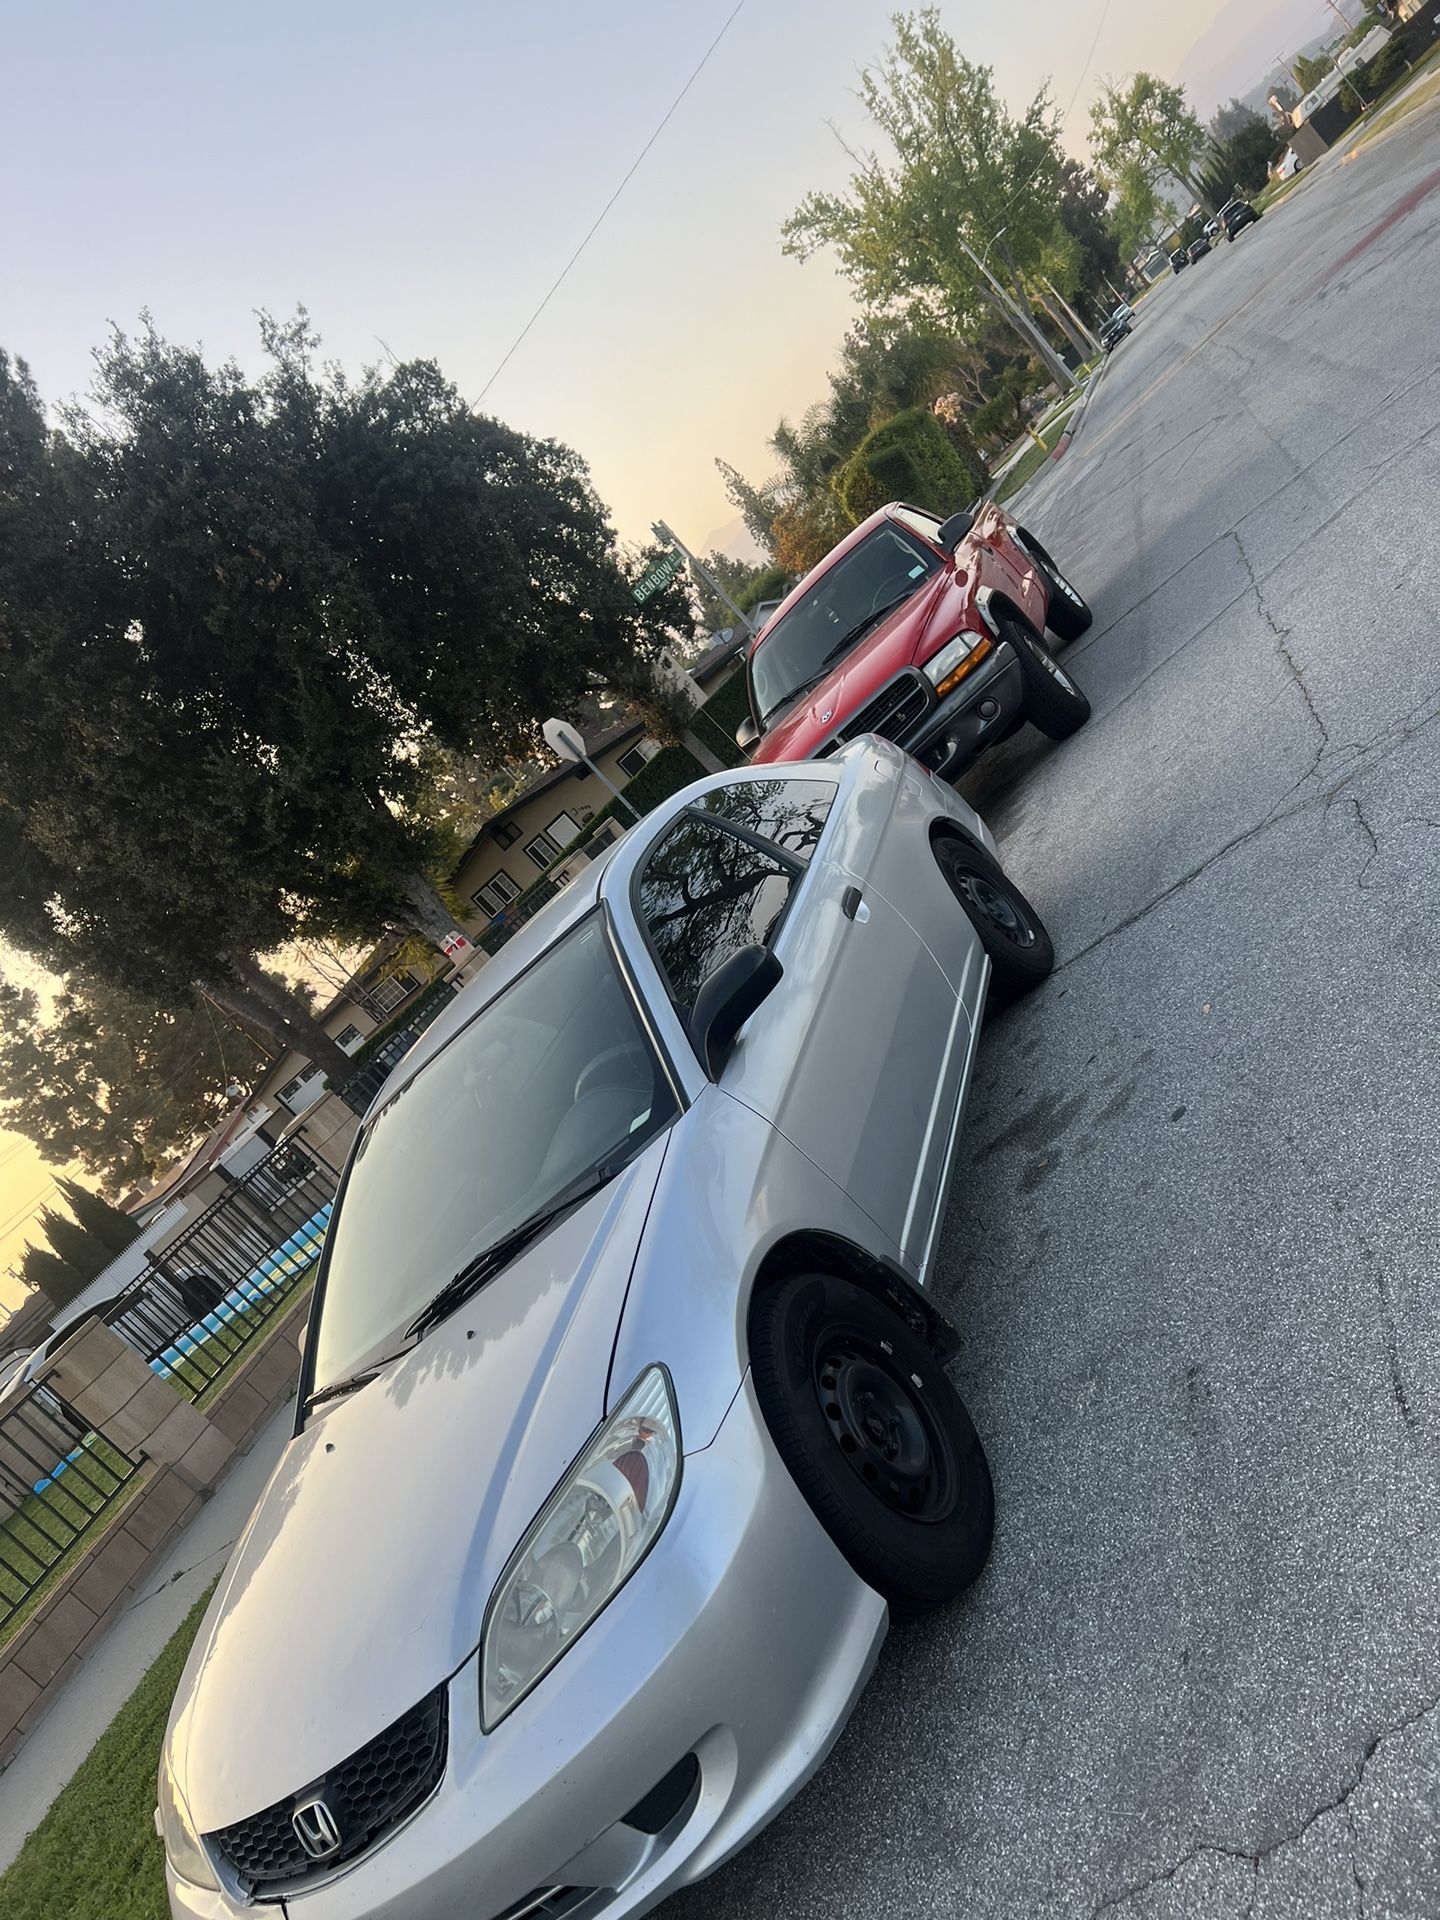 Honda Civic & Dodge Dakota 